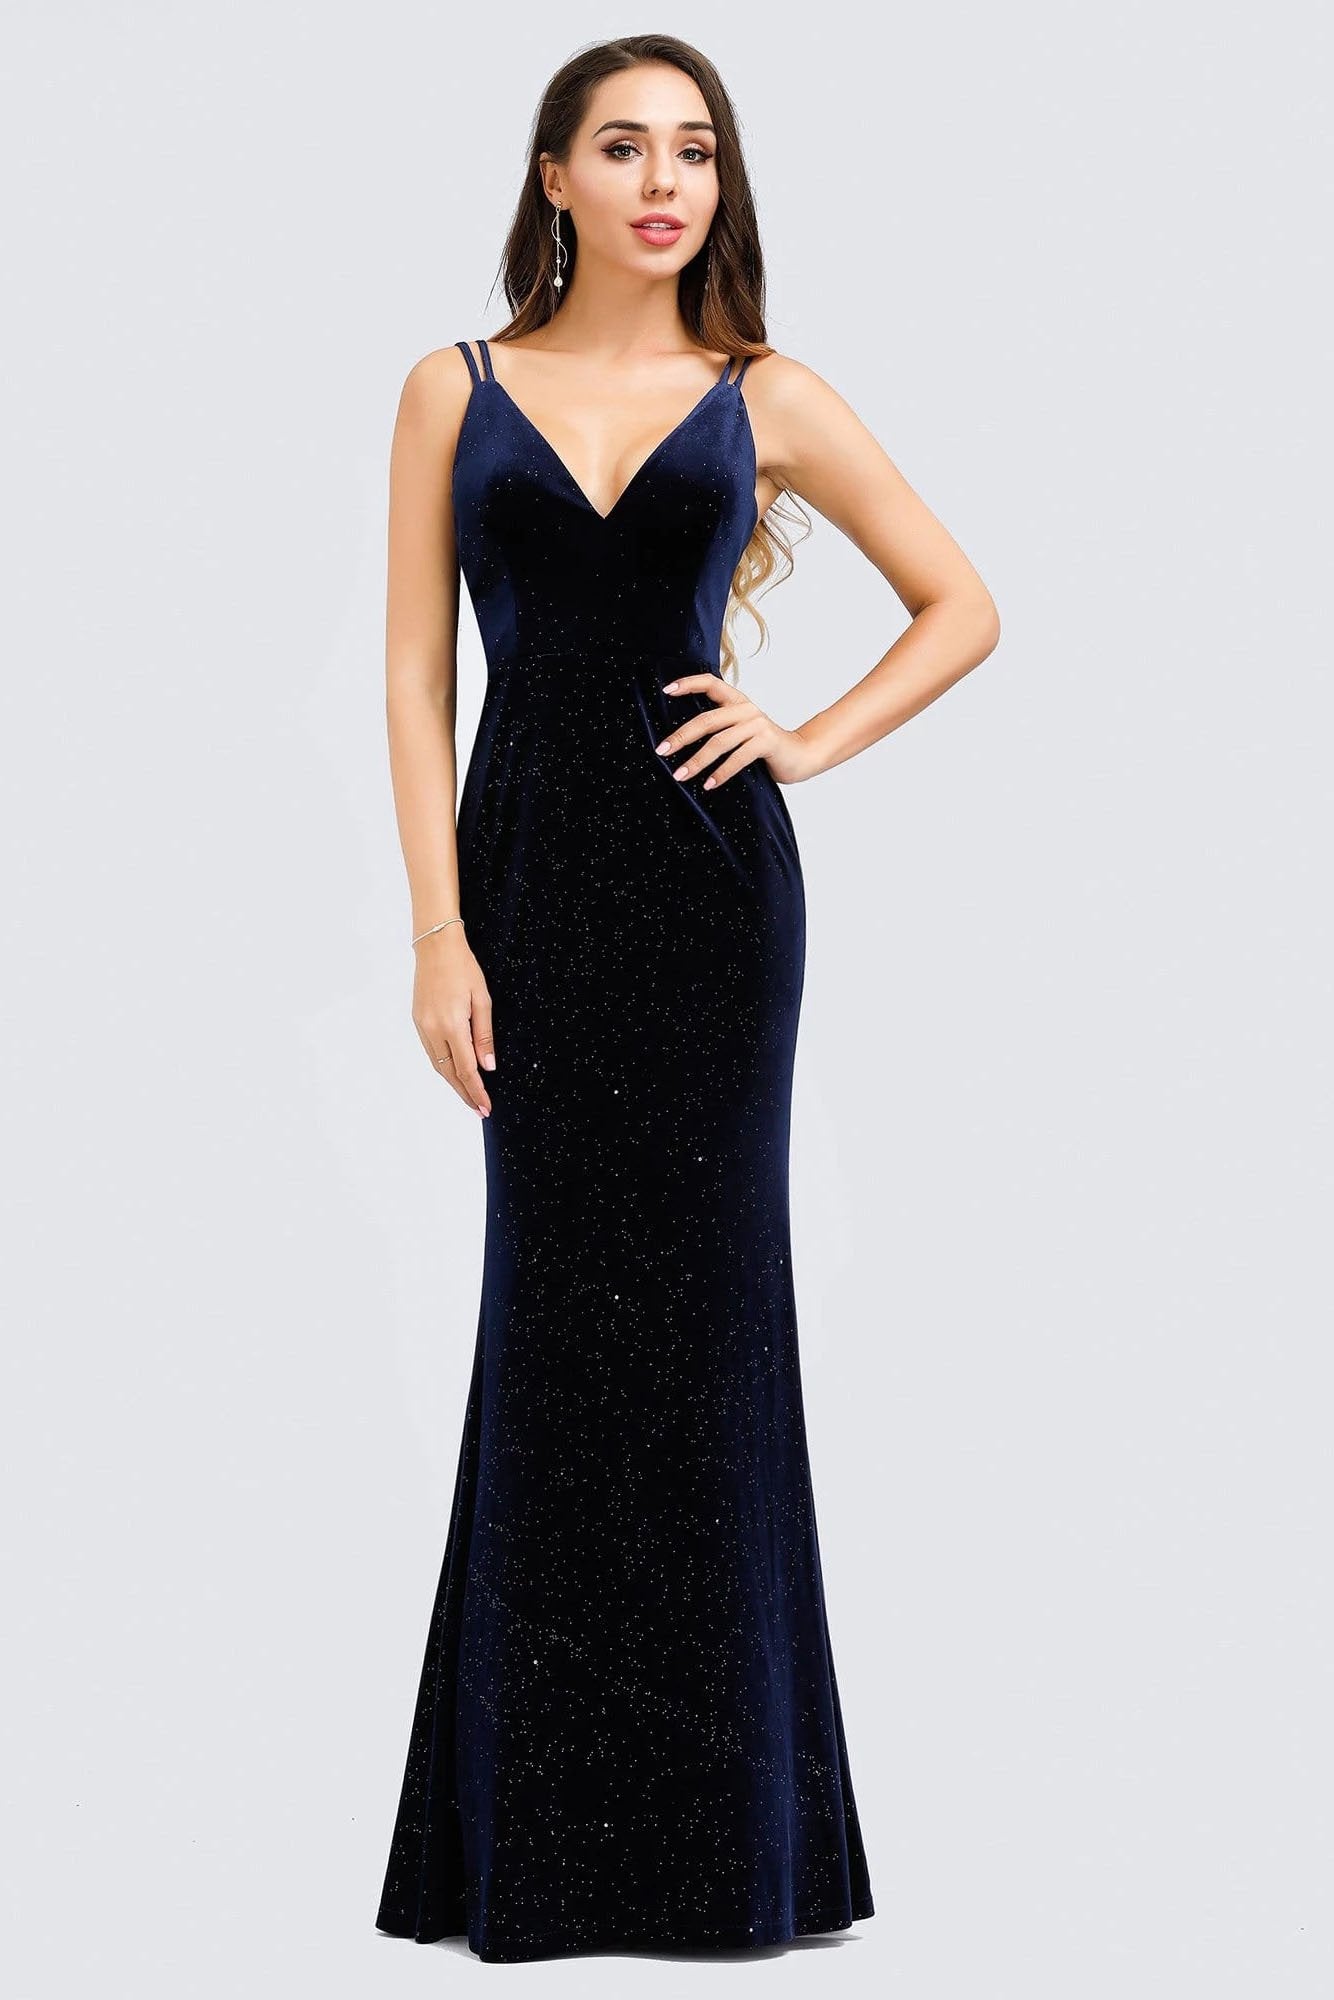 V-Neck Spaghetti Straps Velvet Dark Navy Blue Mermaid Evening Dress, Prom Dresses SWK15480